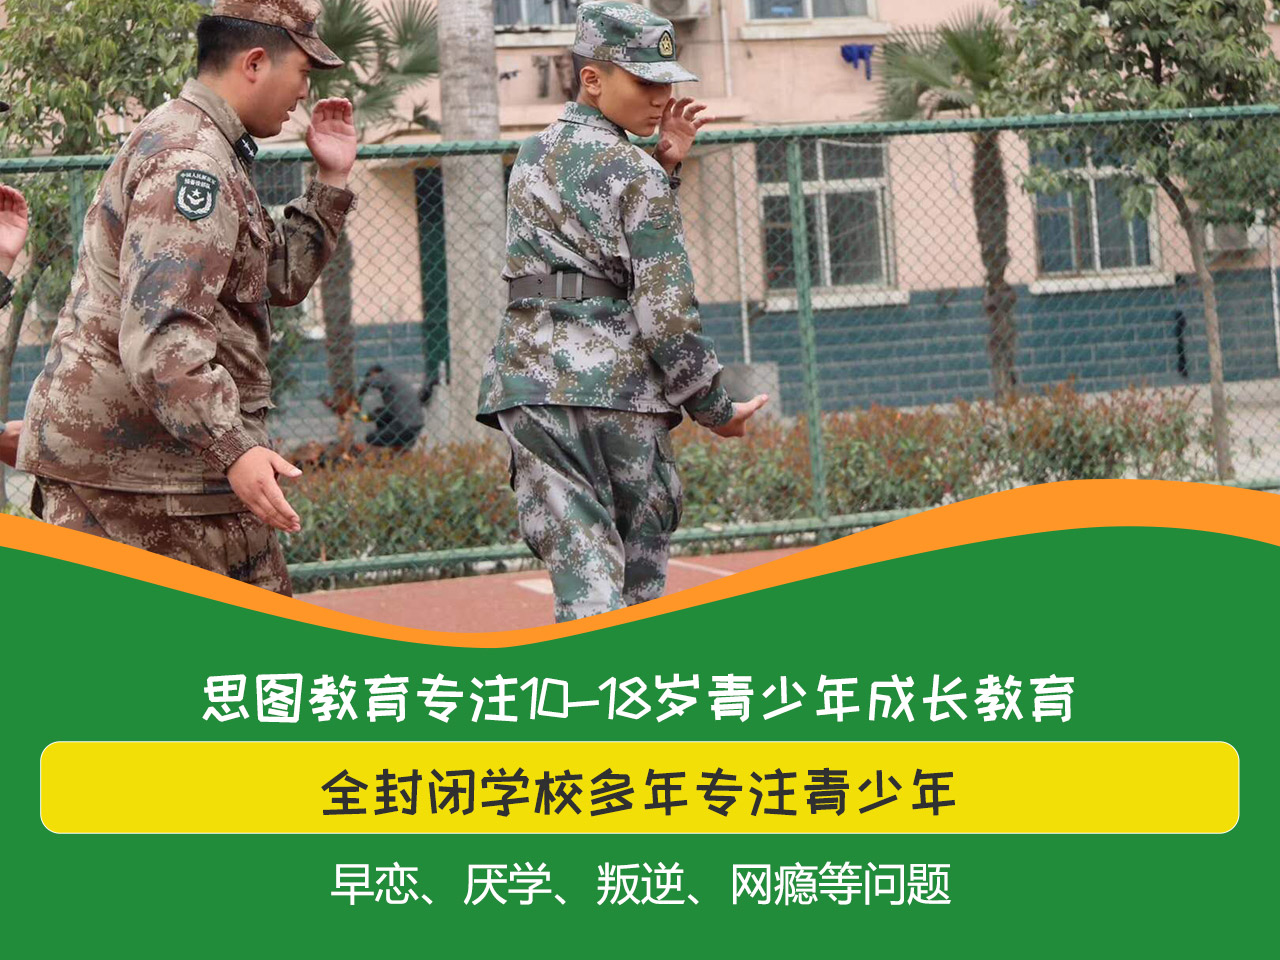 河南郑州叛逆孩子管教教育咨询 河南朗思思图教育